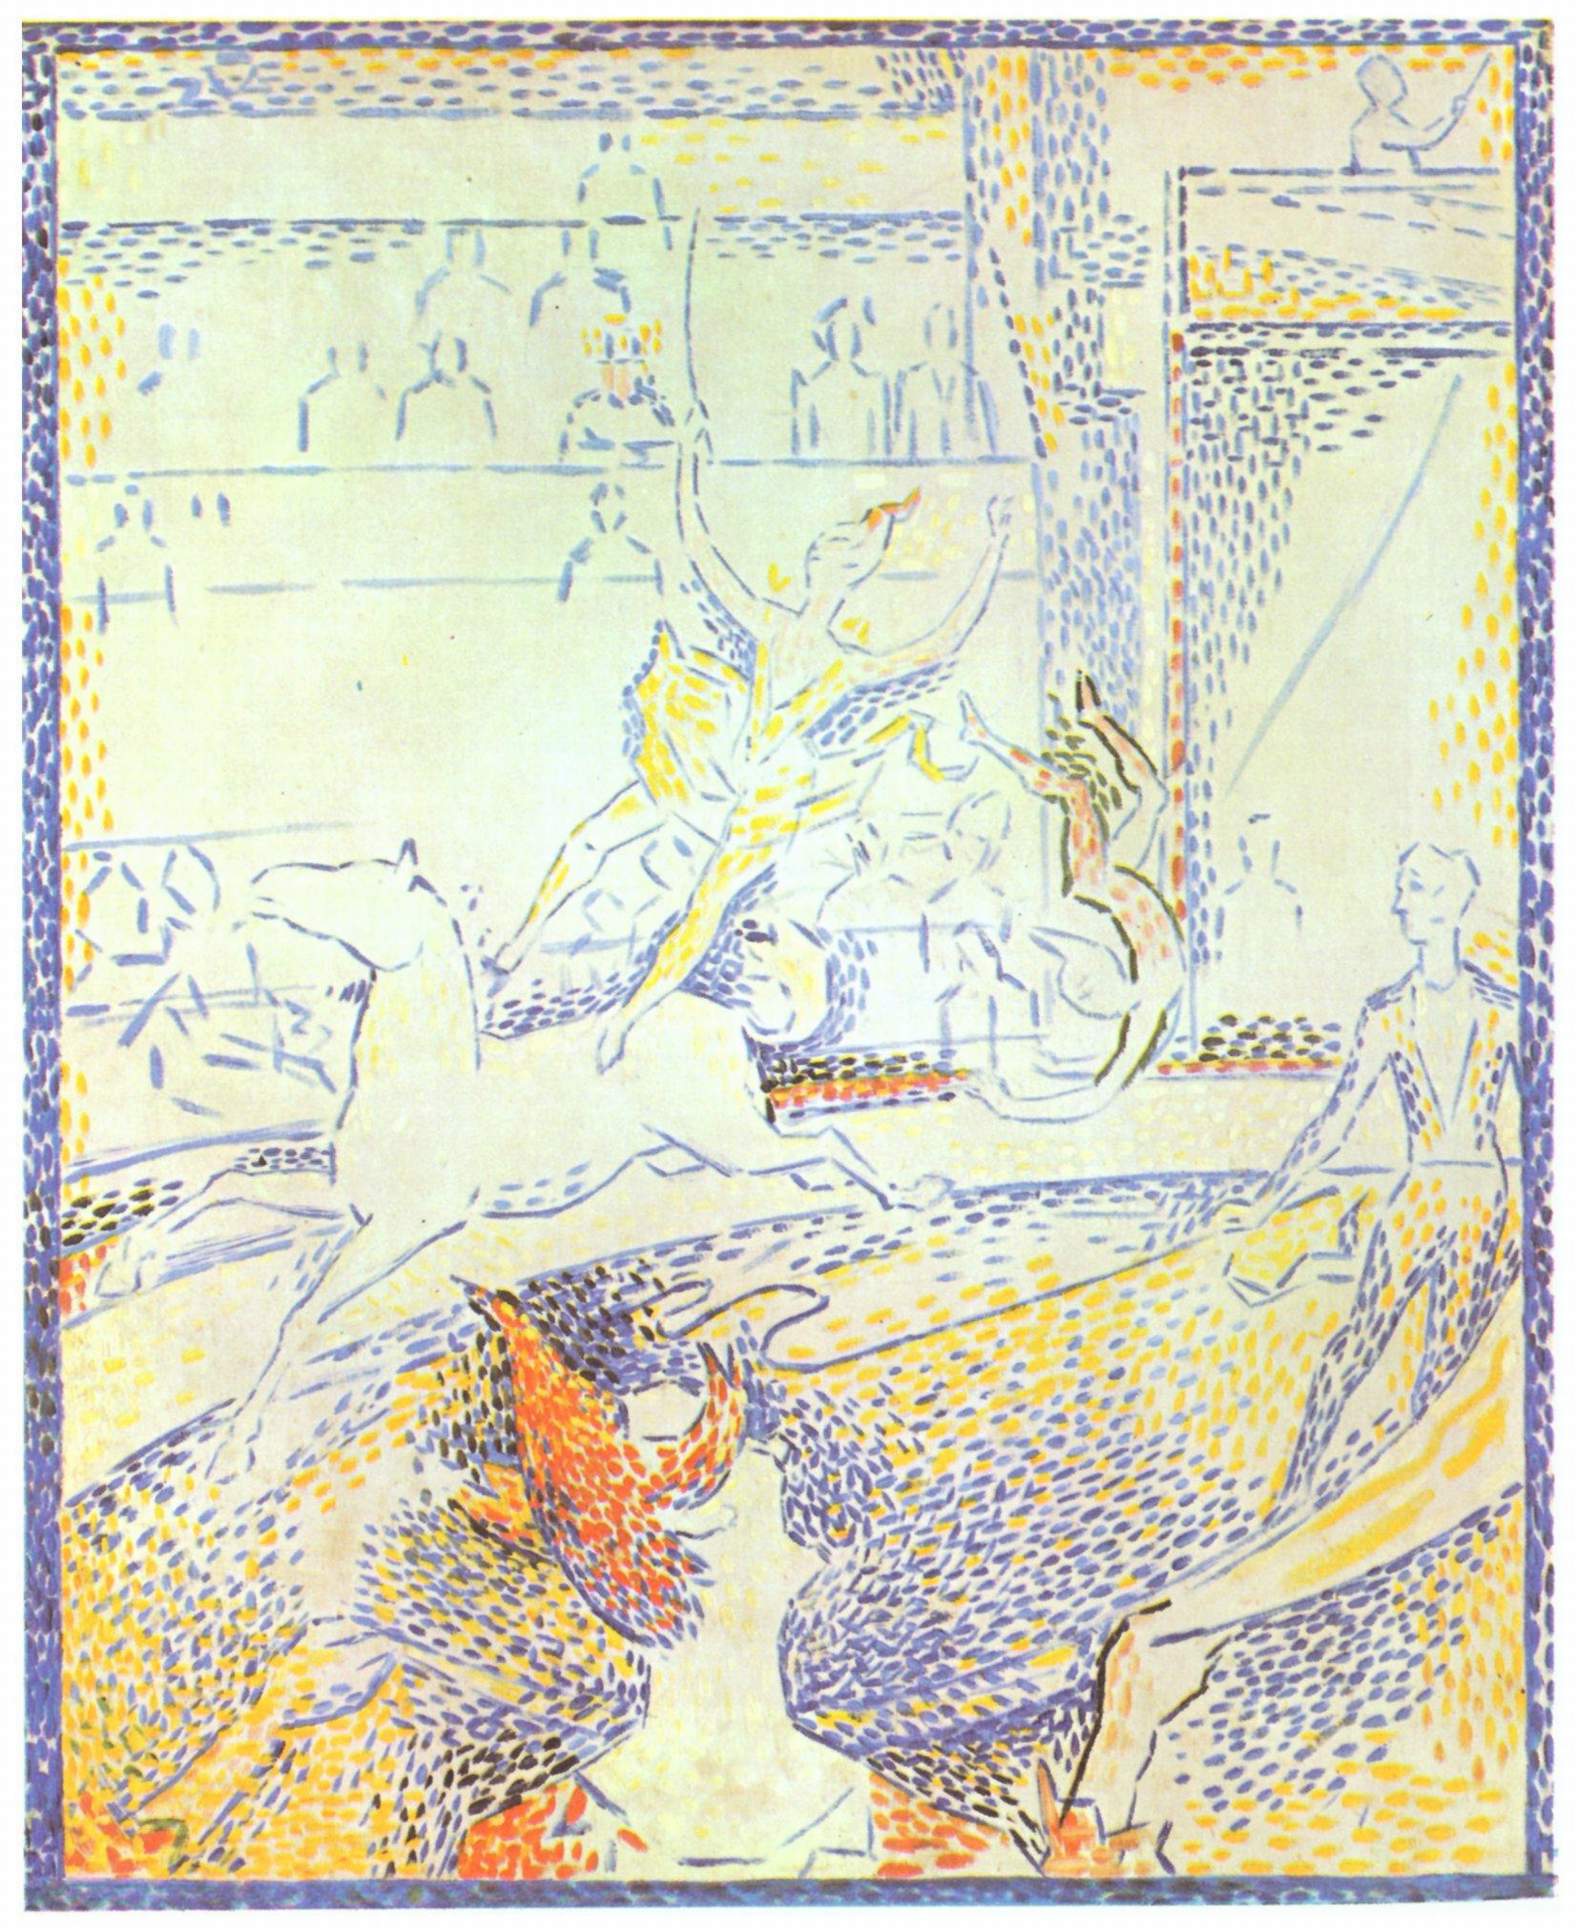 Étude pour "Le Cirque" - Georges Seurat